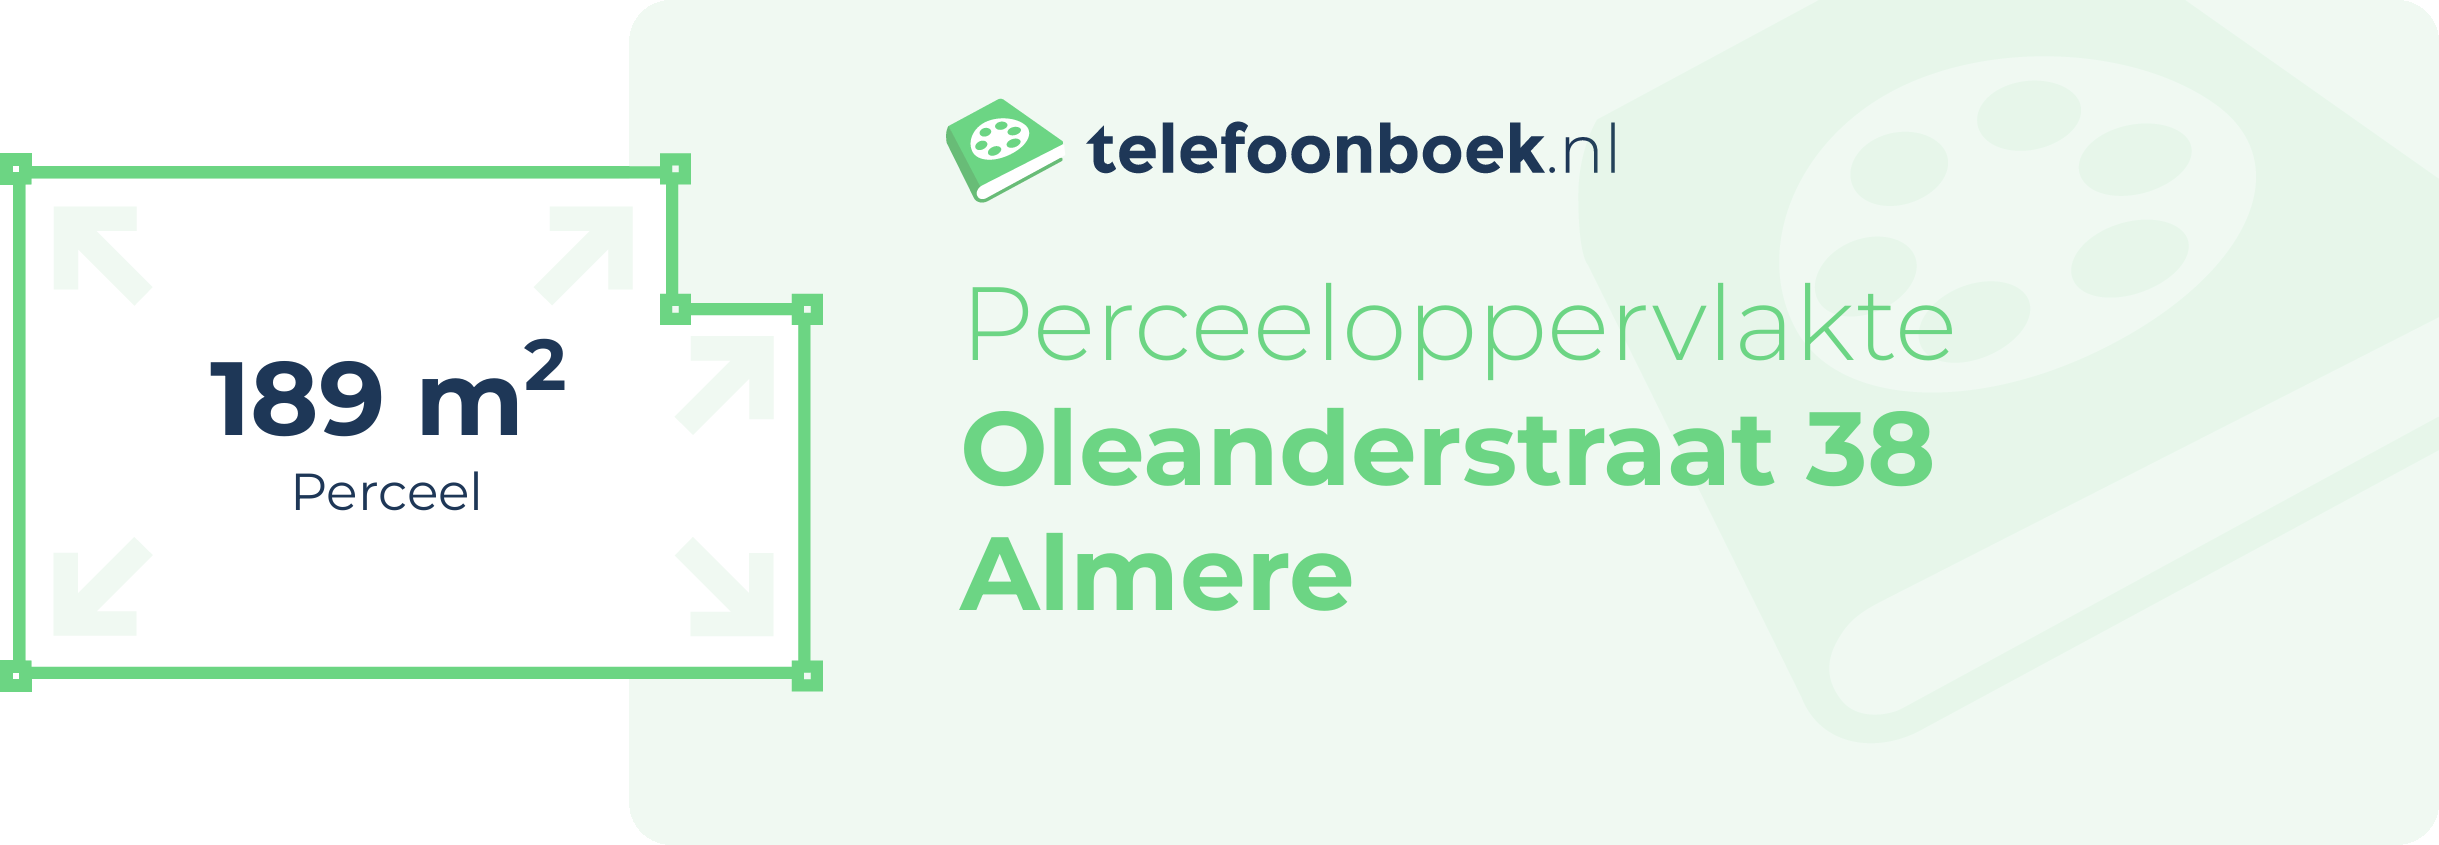 Perceeloppervlakte Oleanderstraat 38 Almere